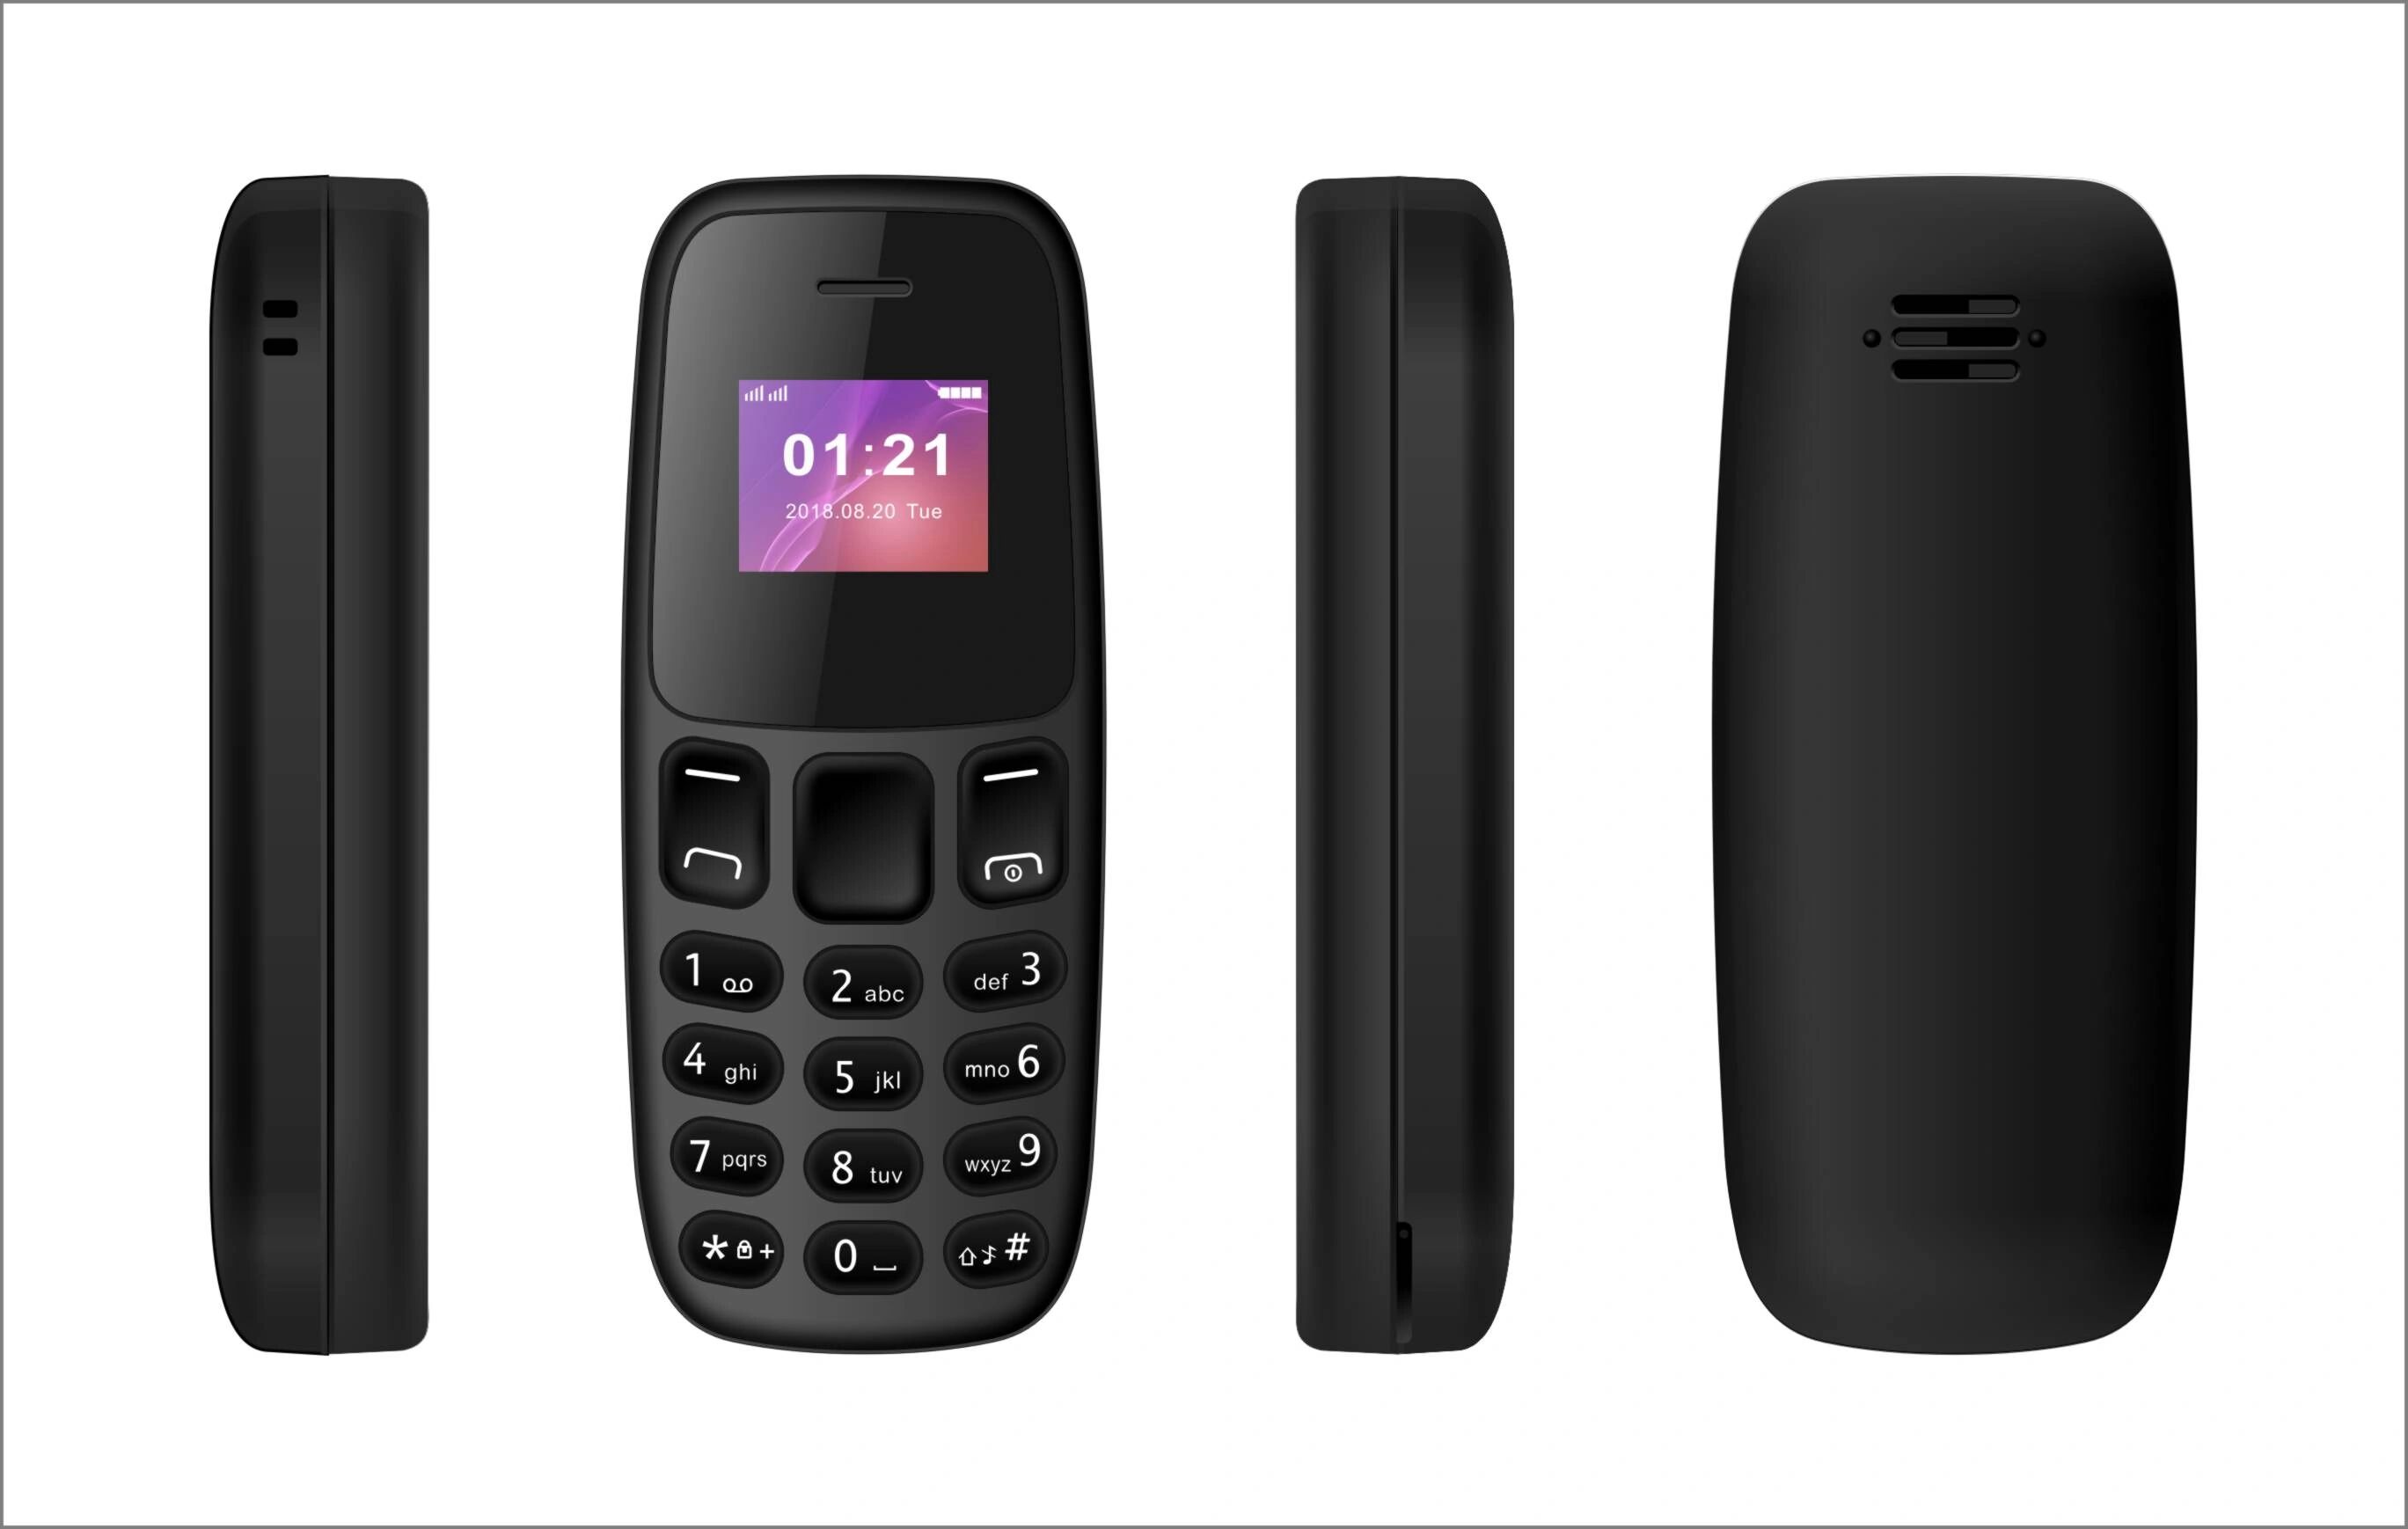 iPouzdro.cz Mini mobilní telefon - L8STAR, BM105 Black